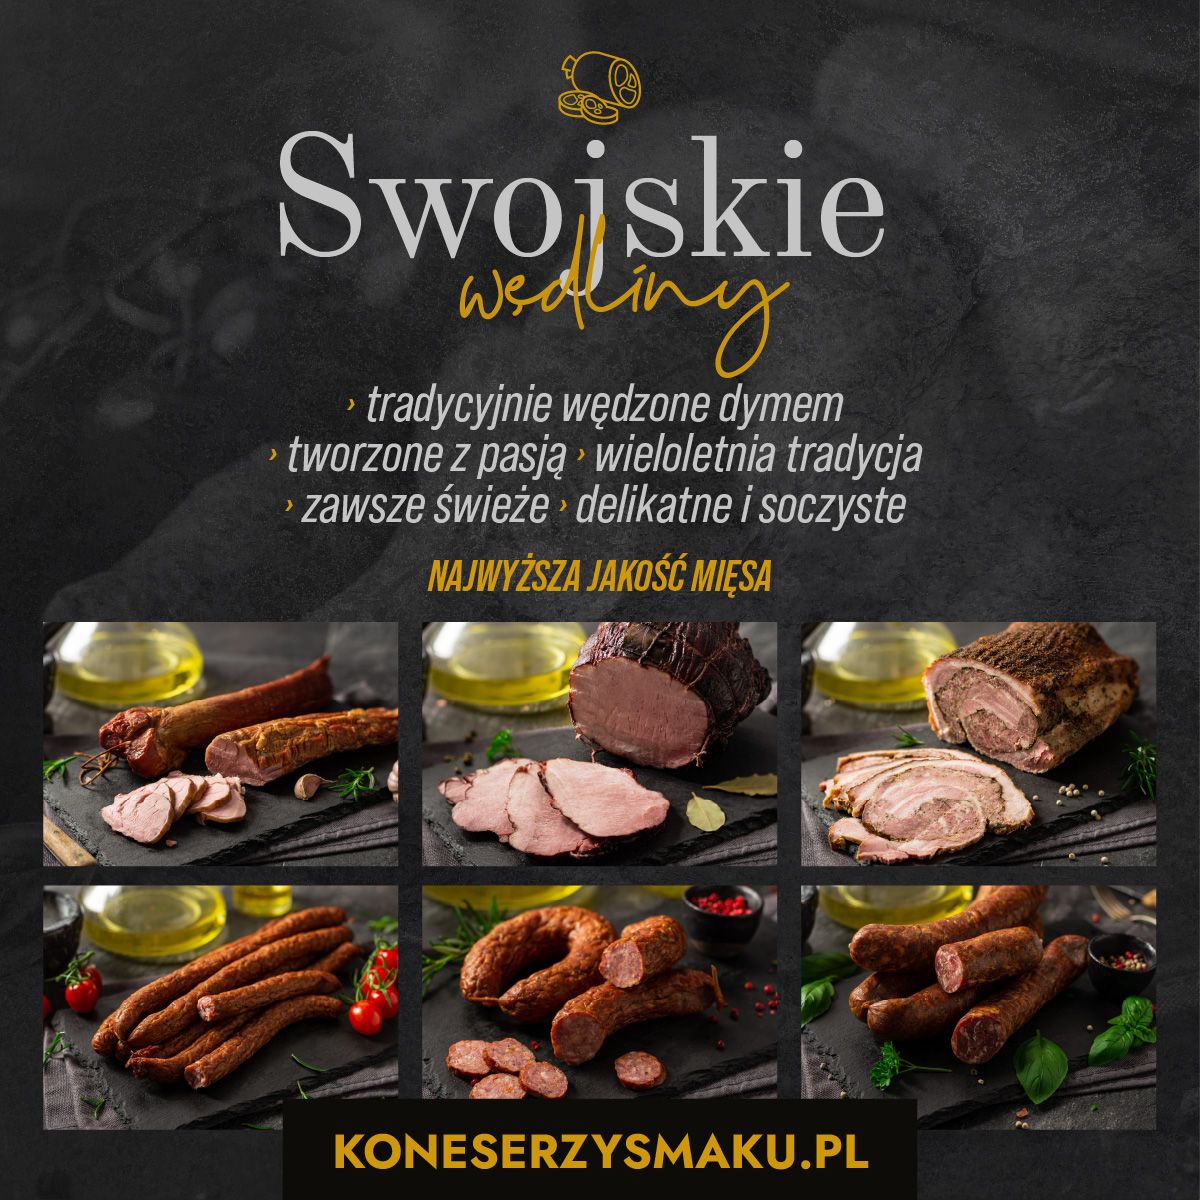 Polski sklep internetowy www.koneserzysmaku.pl Delikatesy spożywcze online z dostawą do domu 